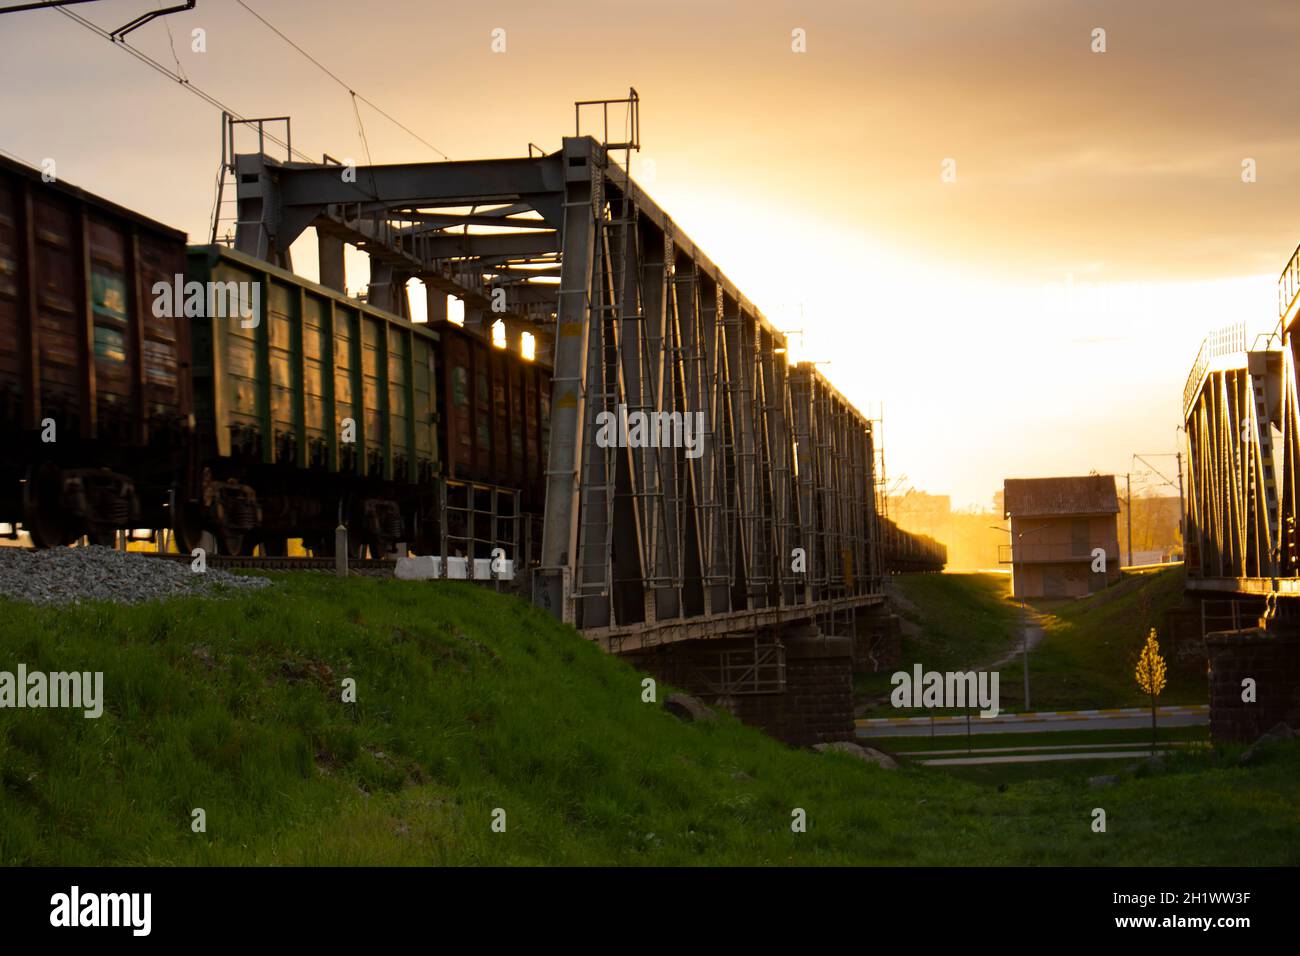 Messa a fuoco selettiva. Vagoni merci su un ponte ferroviario trainato da un treno. La luce del sole della sera e il riflesso della luce arancione della sera dalla struttura metallica Foto Stock